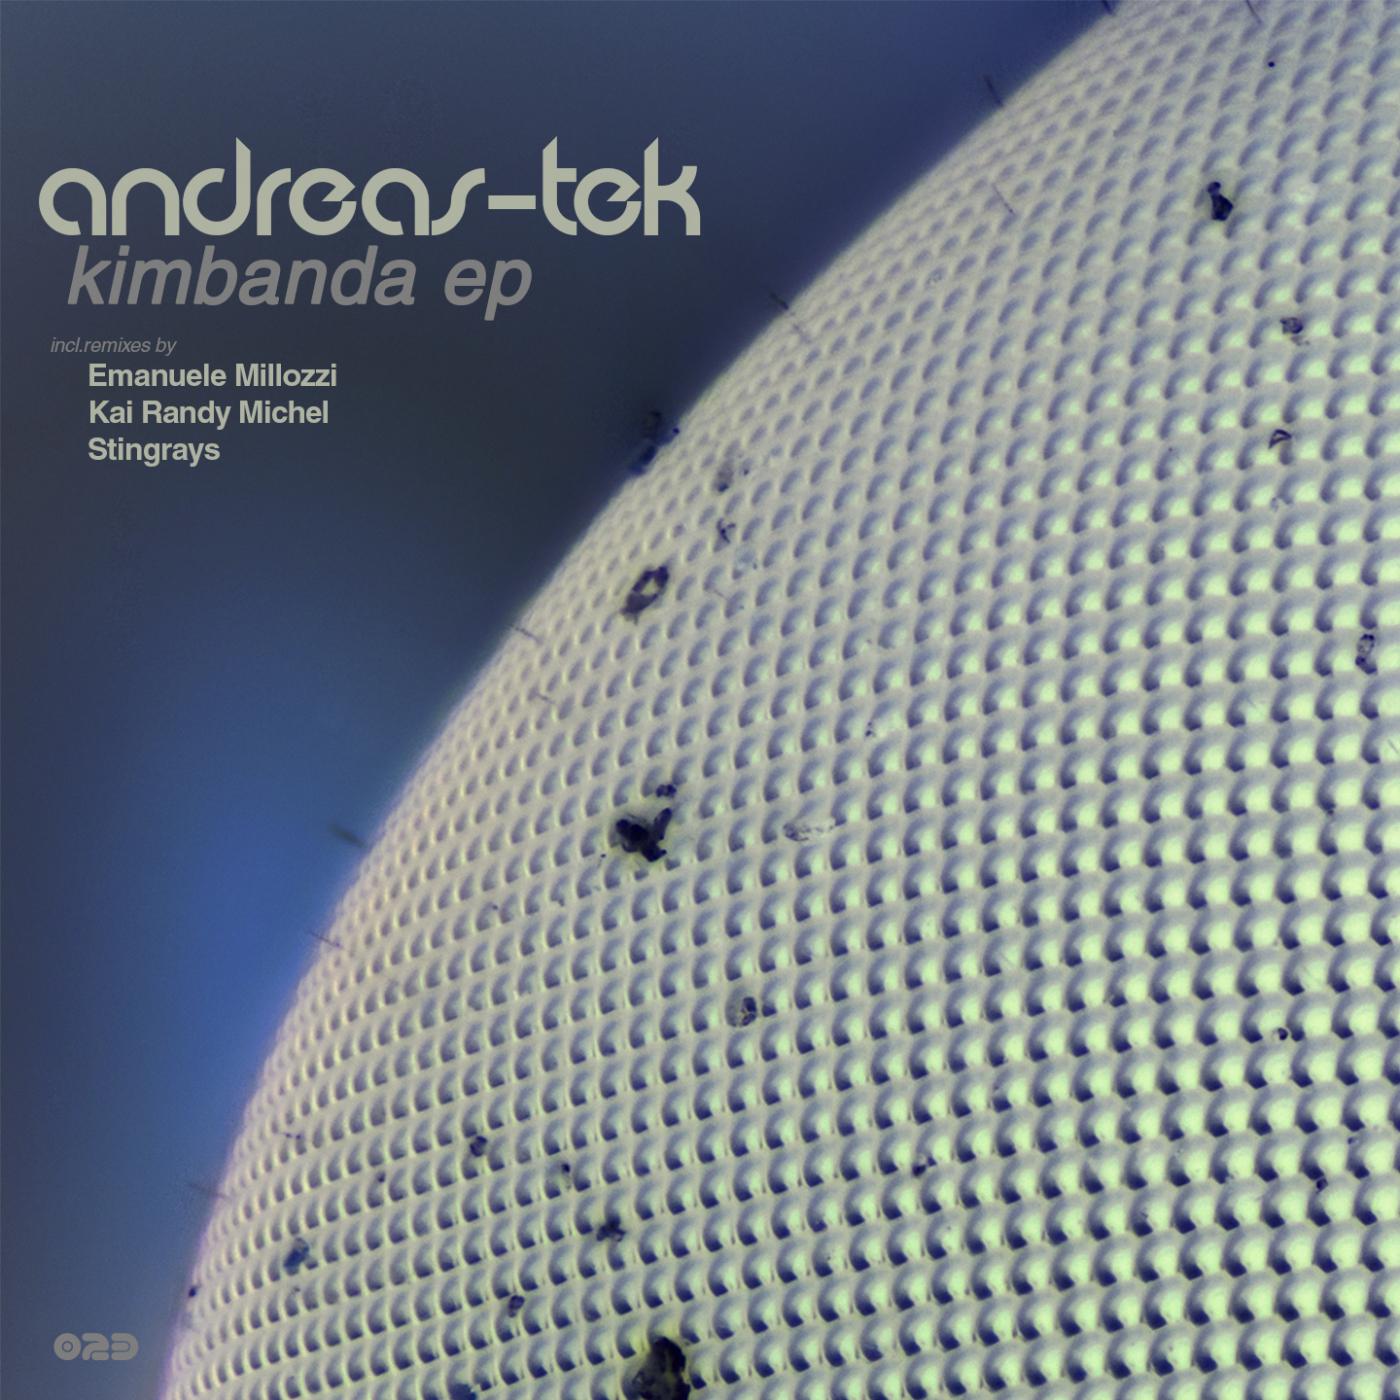 Andreas-Tek - Kimbanda (Emanuele Millozzi Remix)